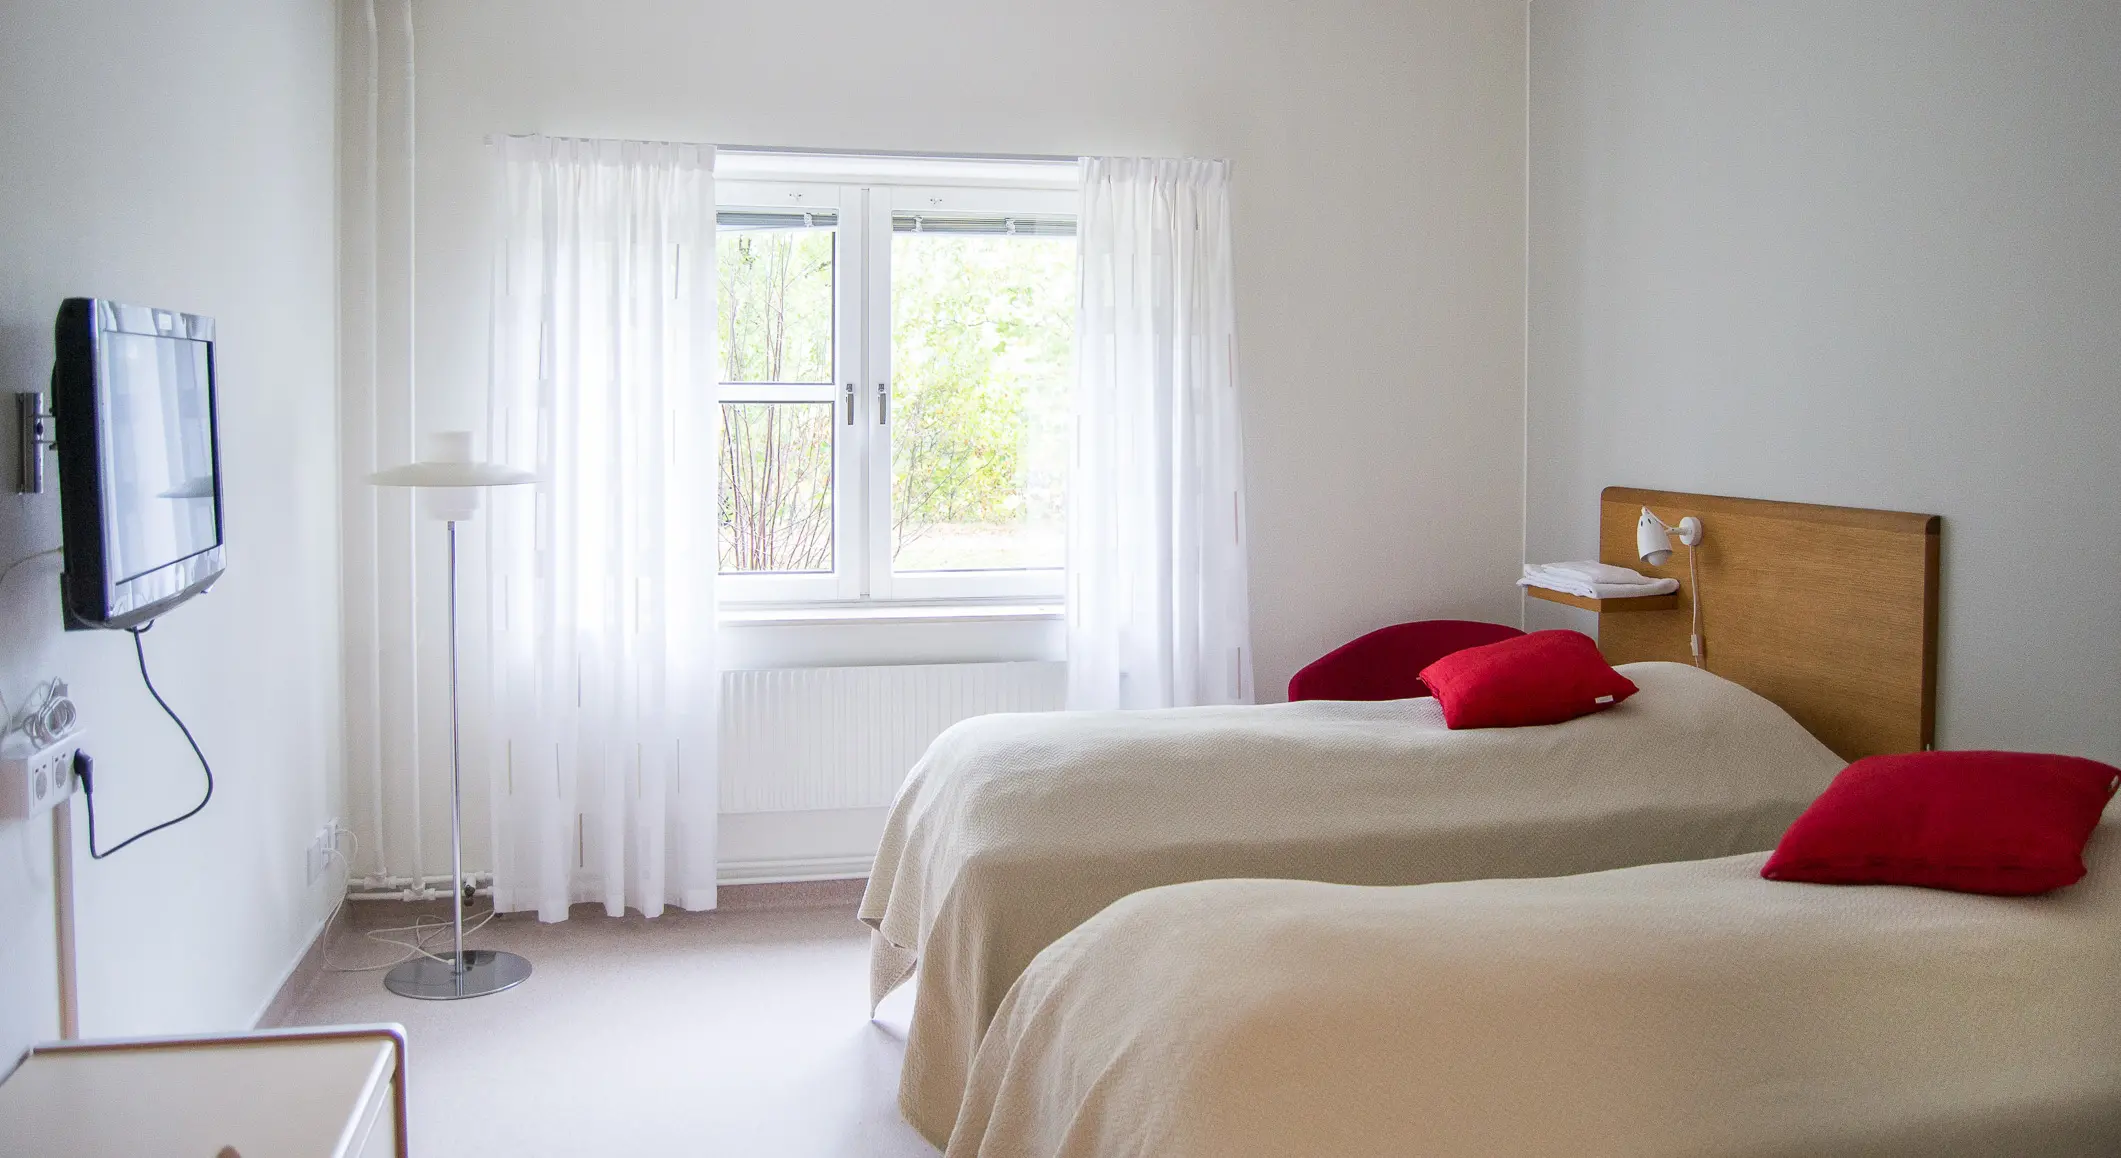 Ett rum där man ser två sängar som står bredvid varandra, nattduksbord, en TV som hänger på väggen och ett fönster med fin natur utanför.